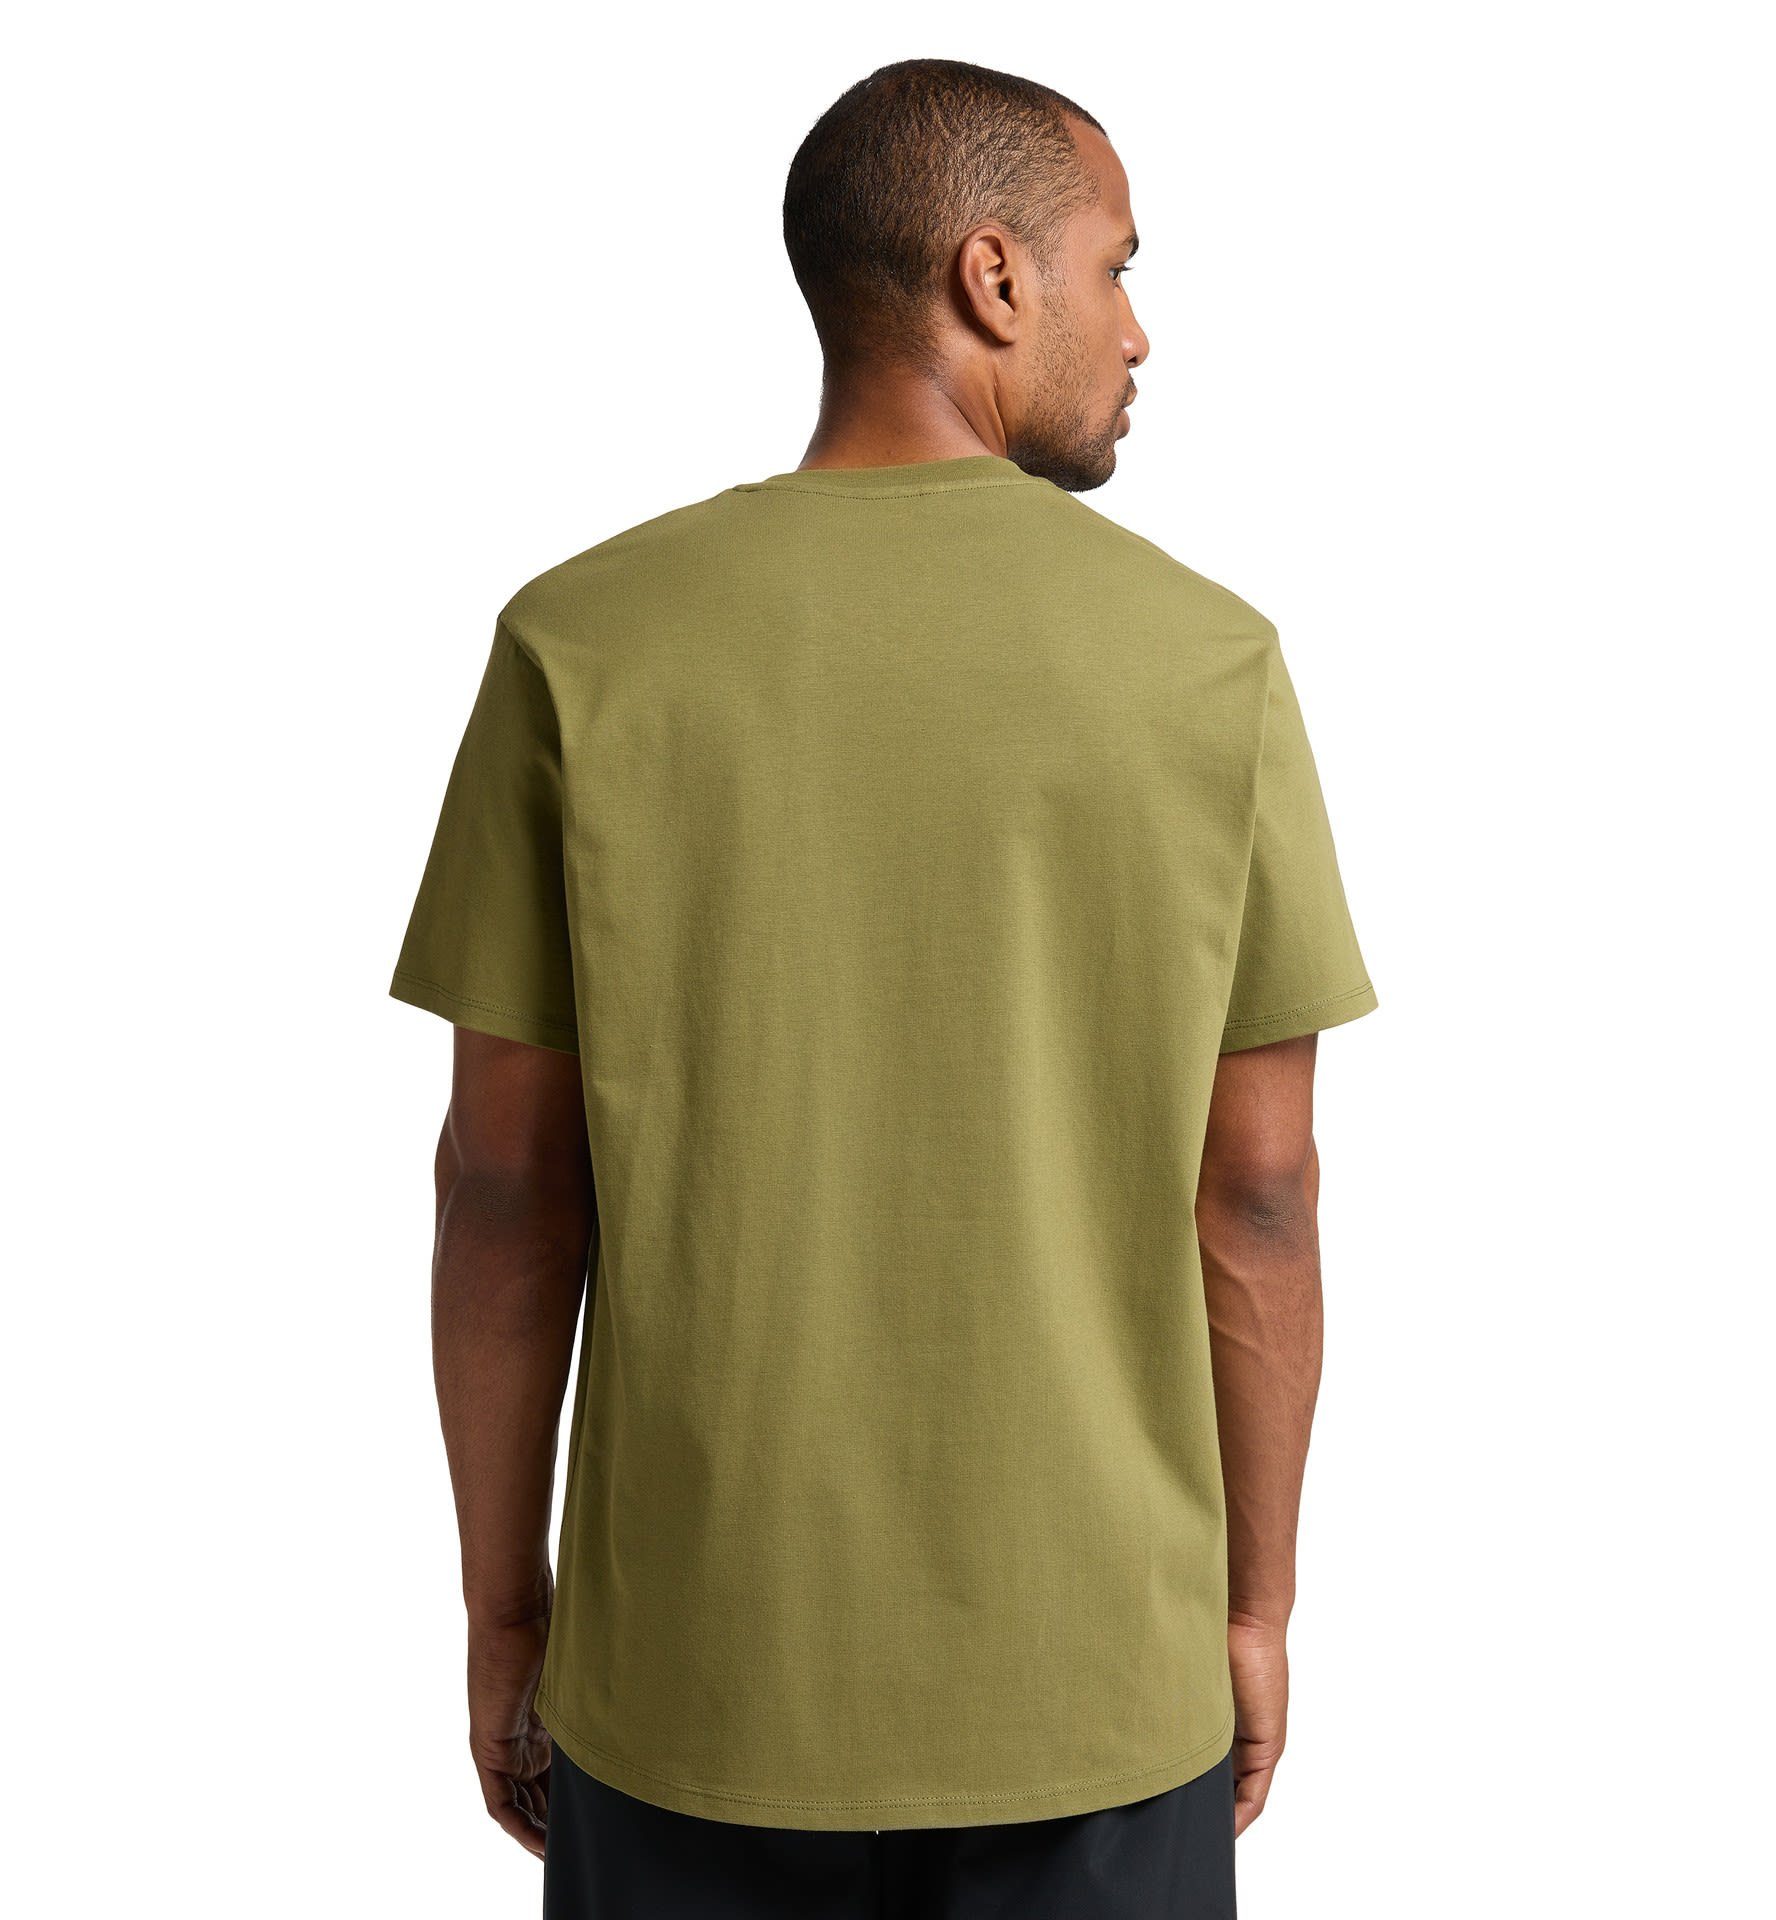 Haglöfs T-Shirt Kurzarm-Shirt Tee M Green Camp Green Haglöfs Herren